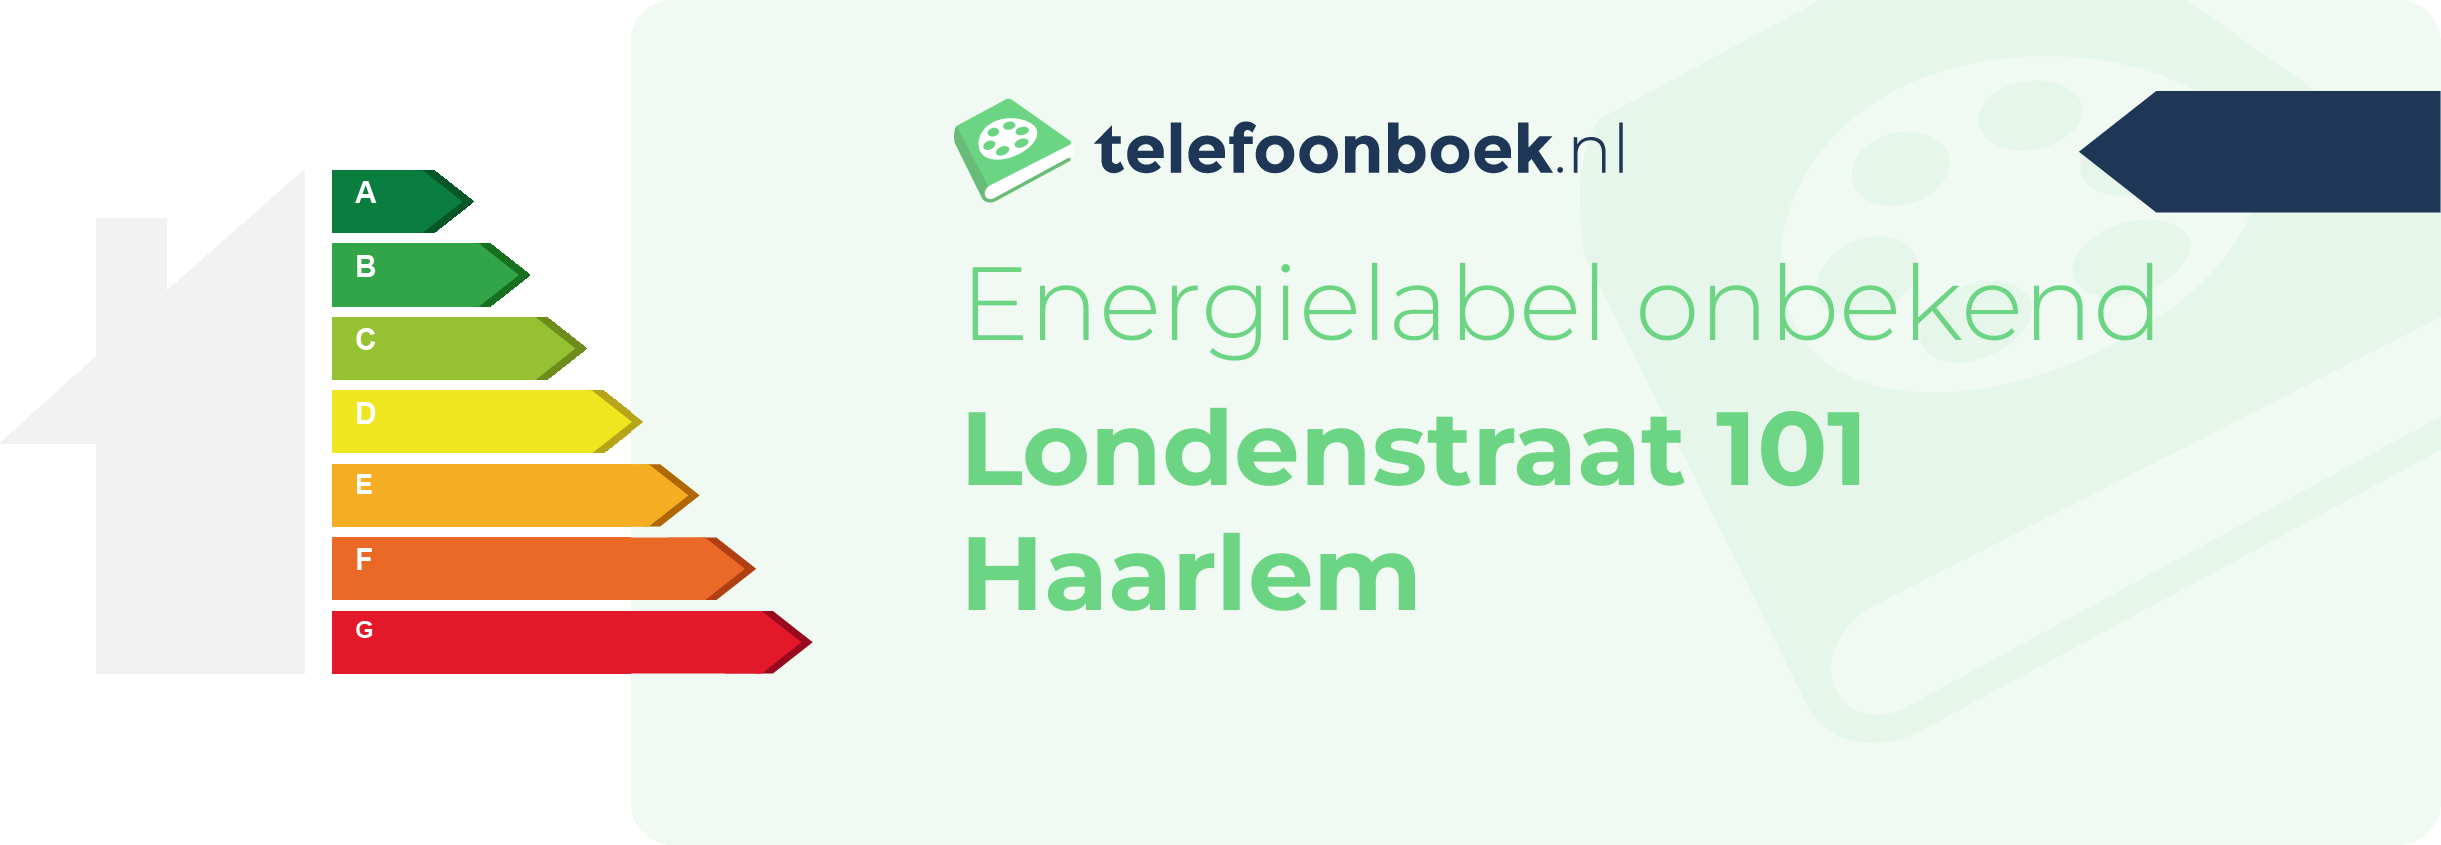 Energielabel Londenstraat 101 Haarlem